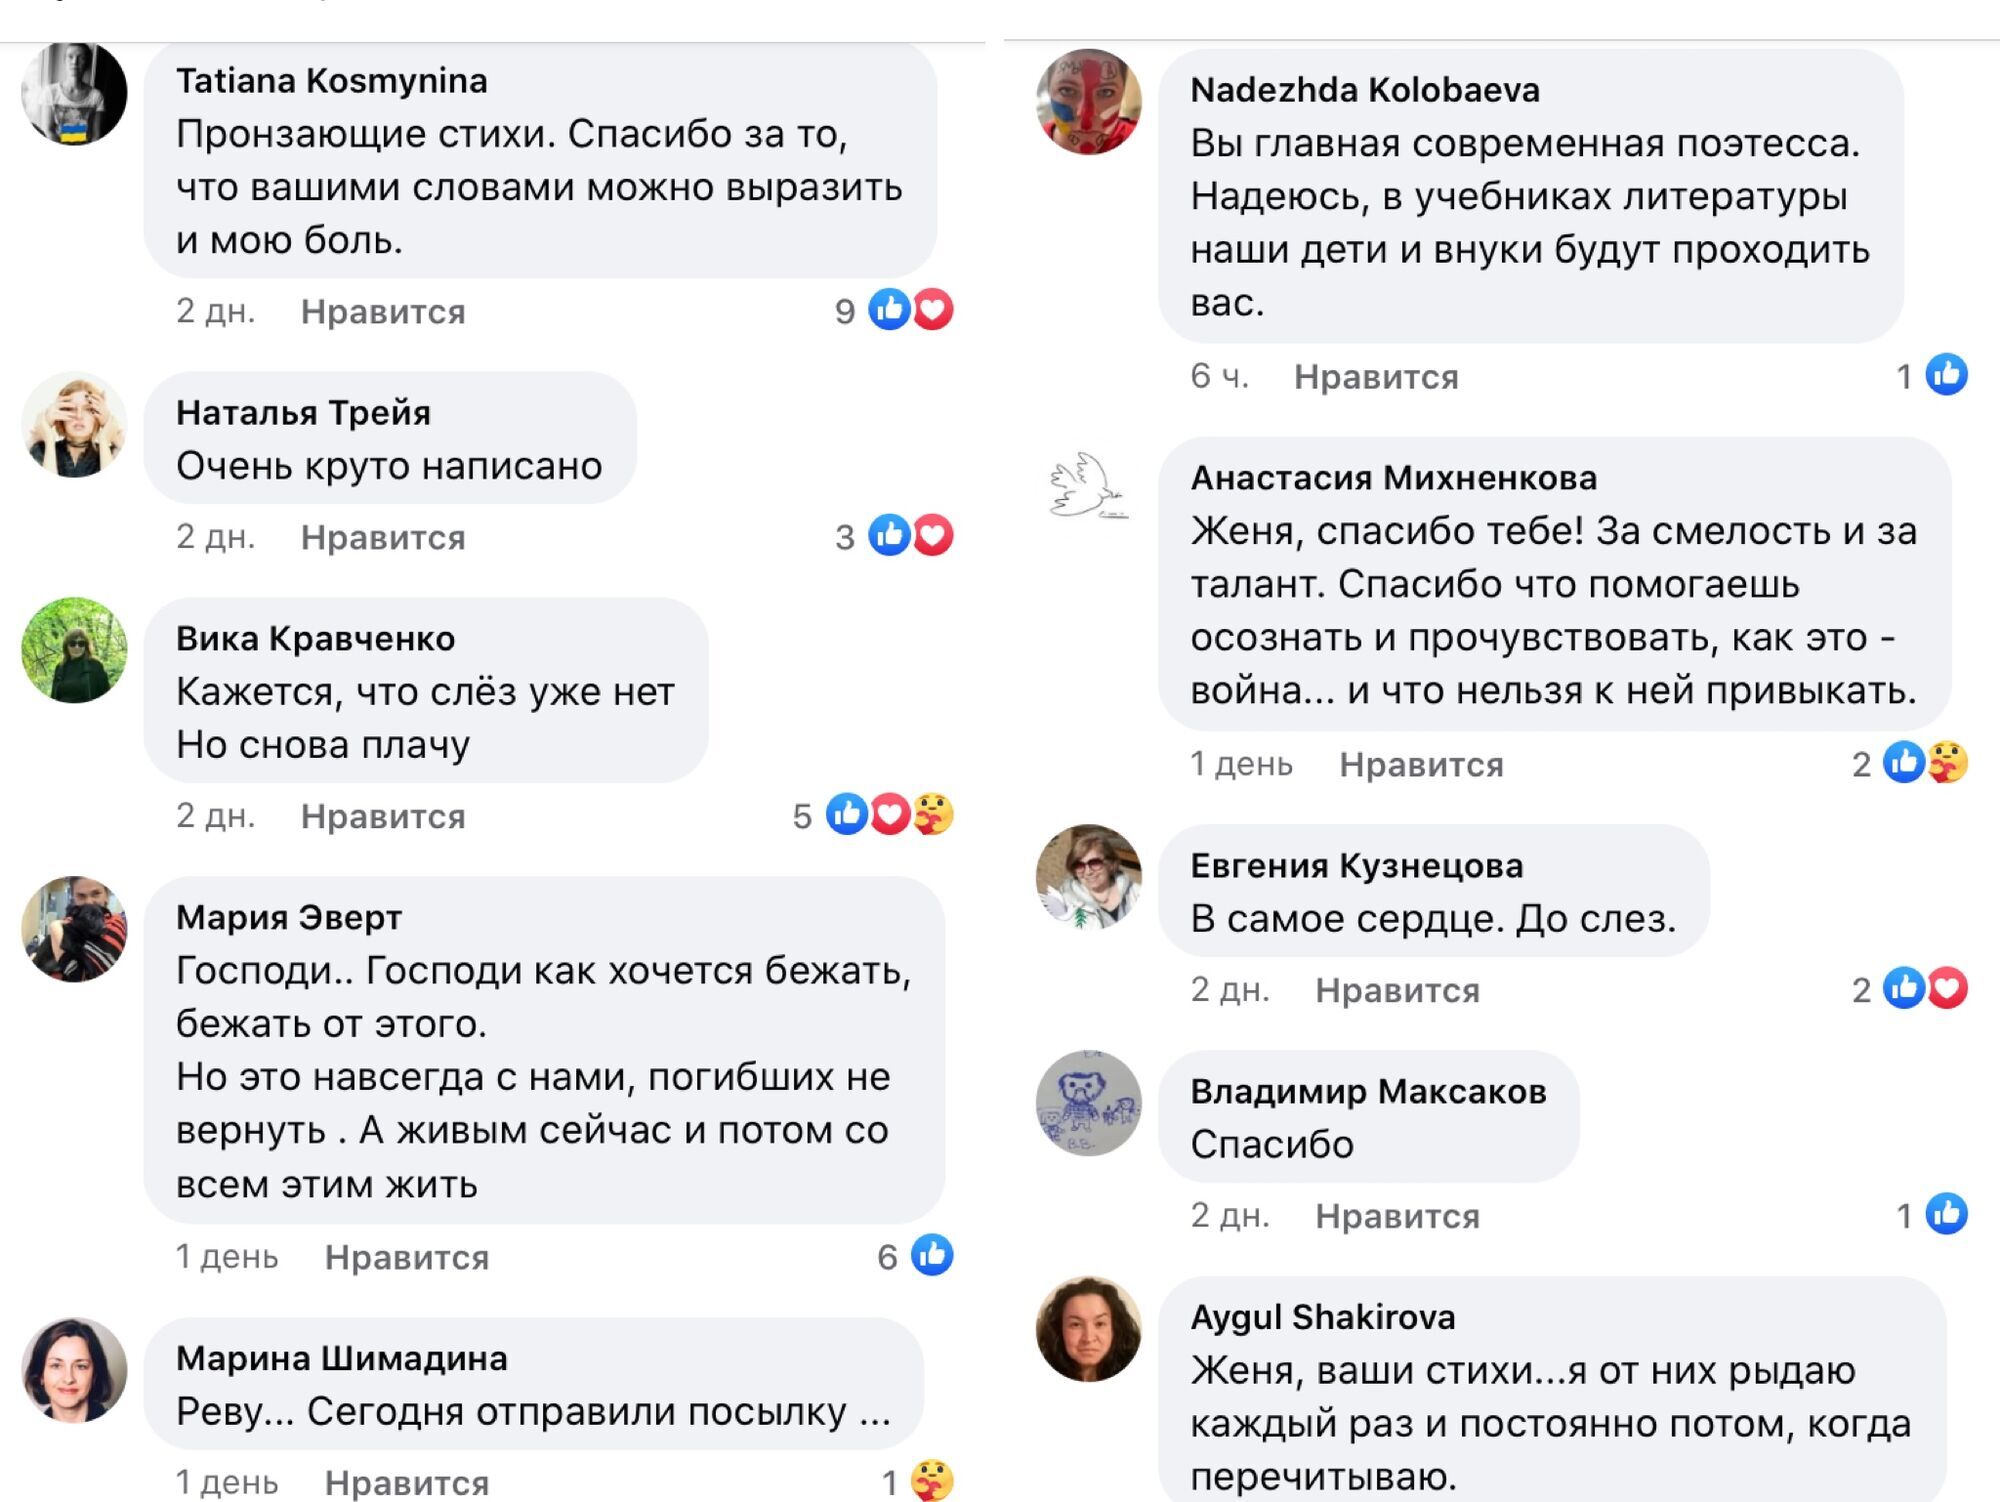 Коментарі під публікацією Беркович